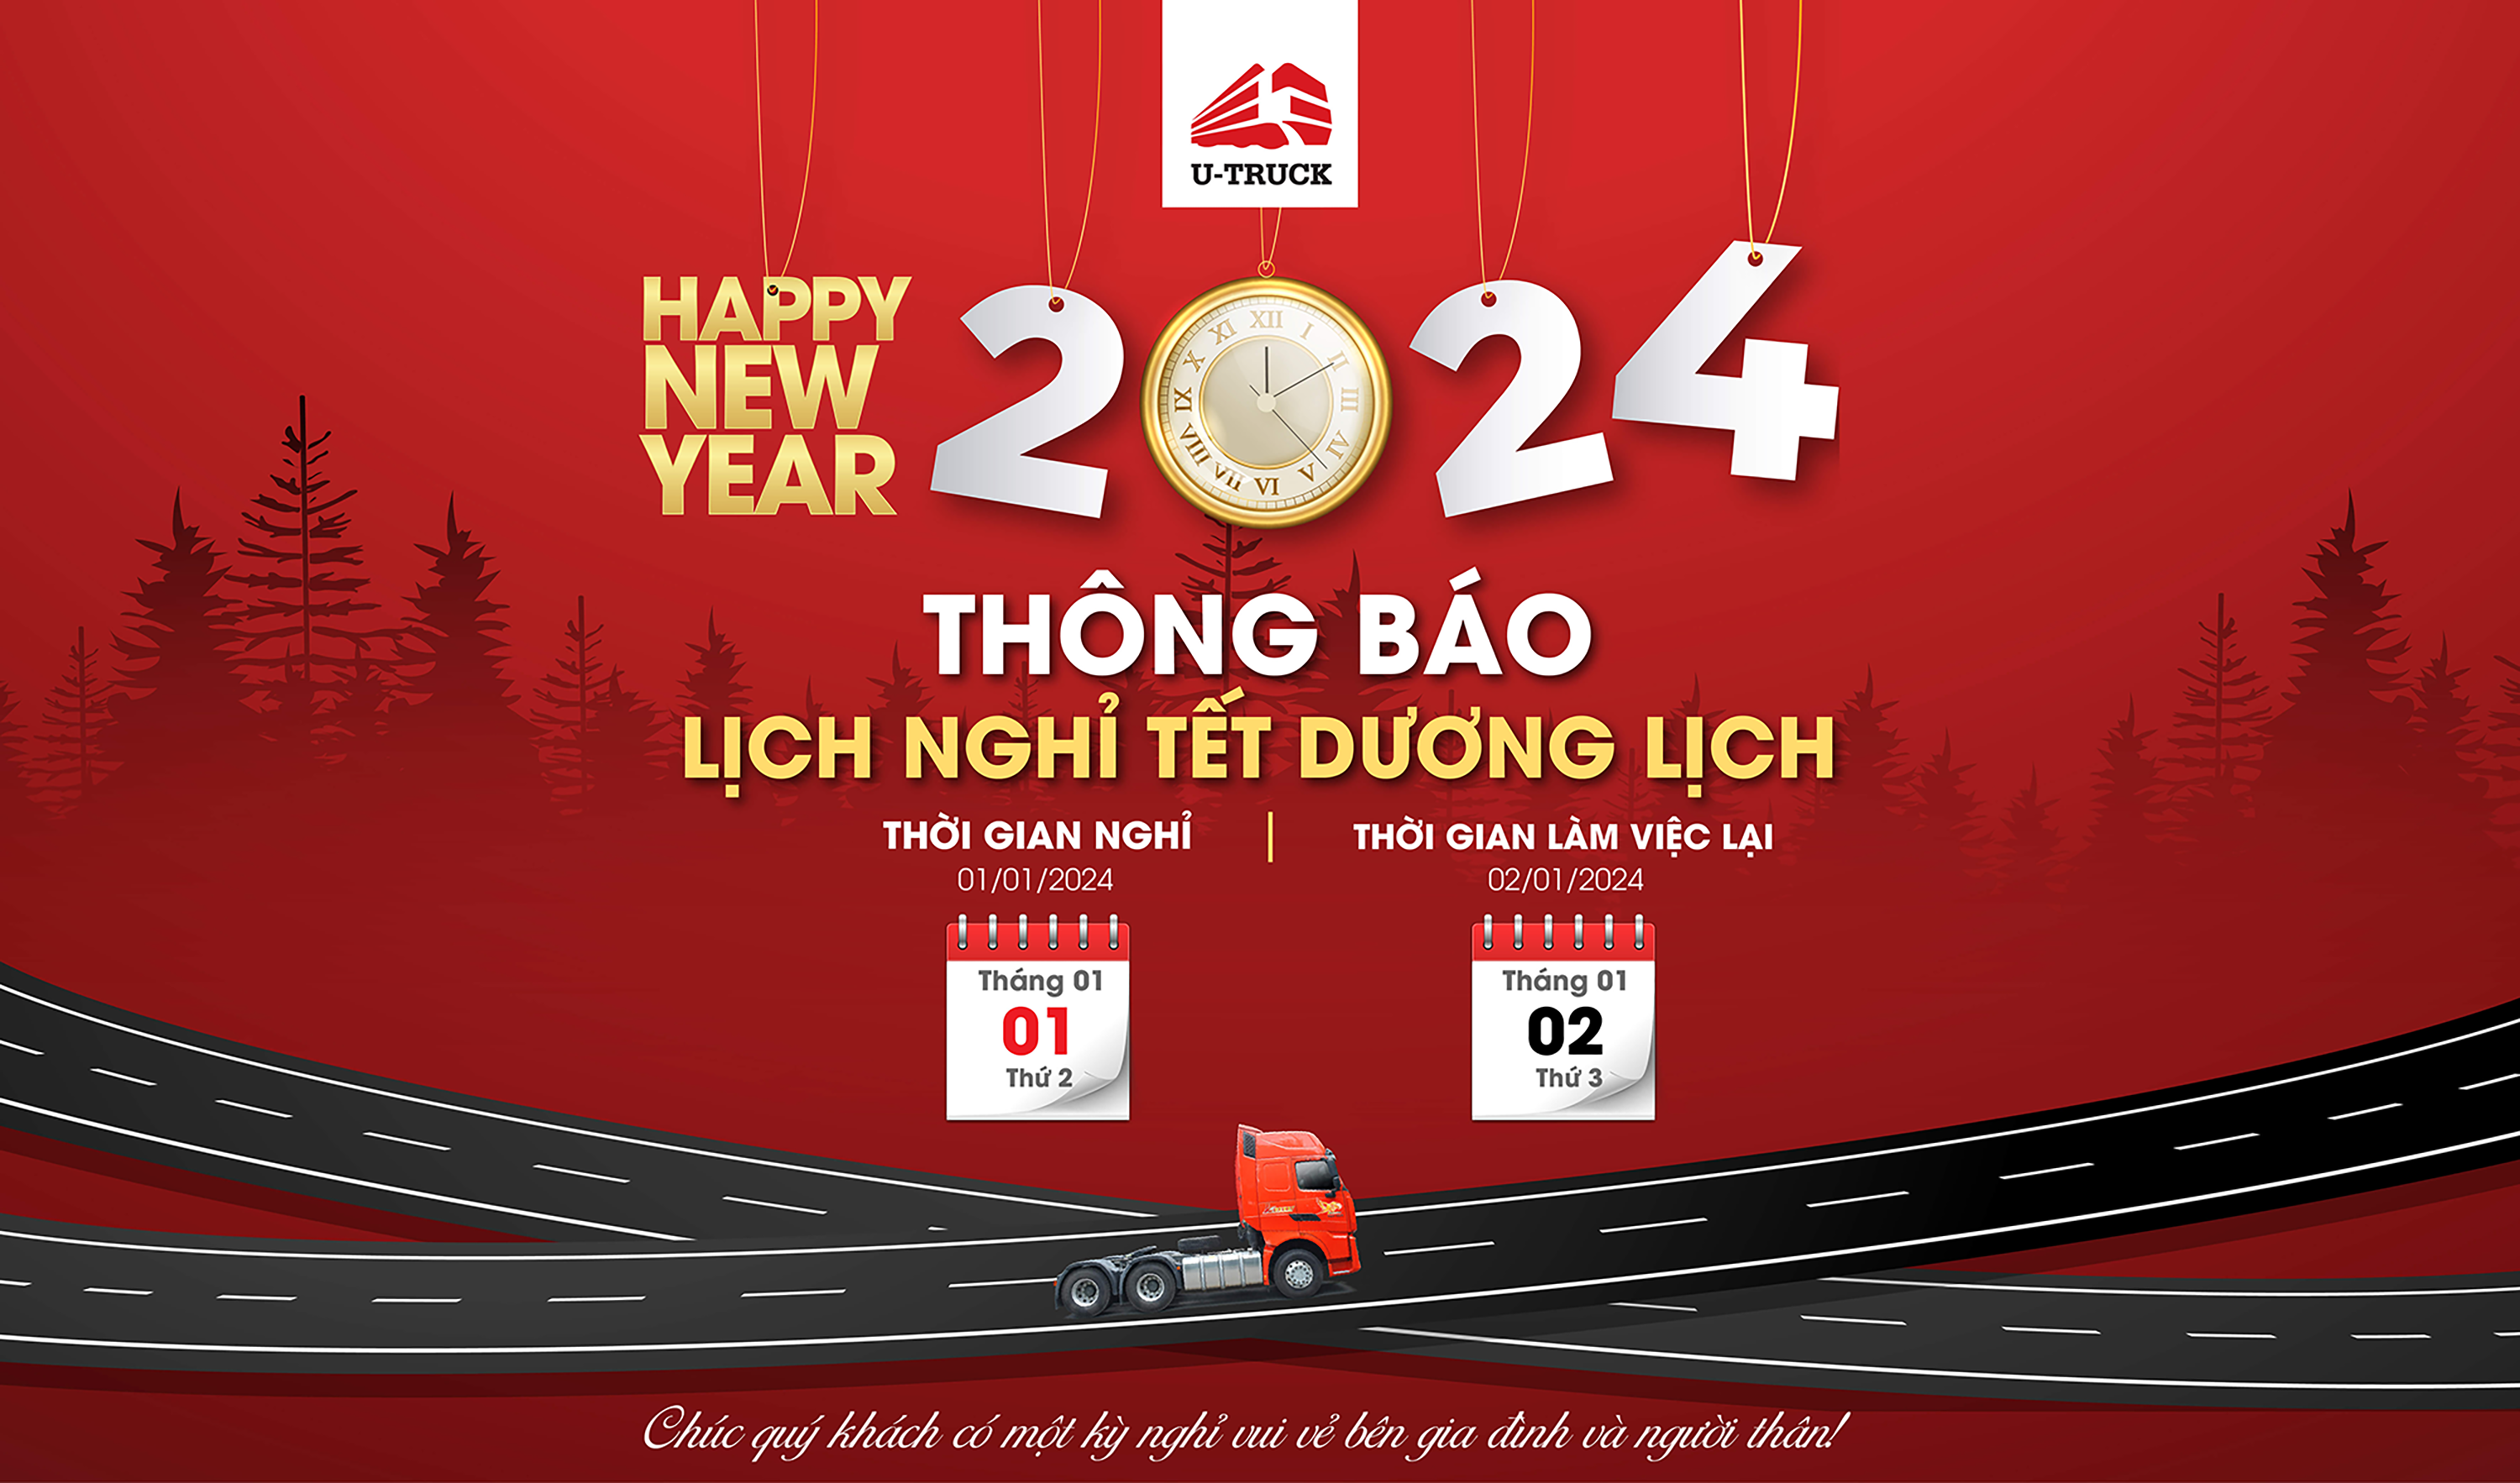 Công ty Cổ phần Cộng đồng xe tải Việt Nam (U-TRUCK) xin gửi đến quý khách hàng, quý đối tác lịch nghỉ Tết Dương lịch trên toàn hệ thống.